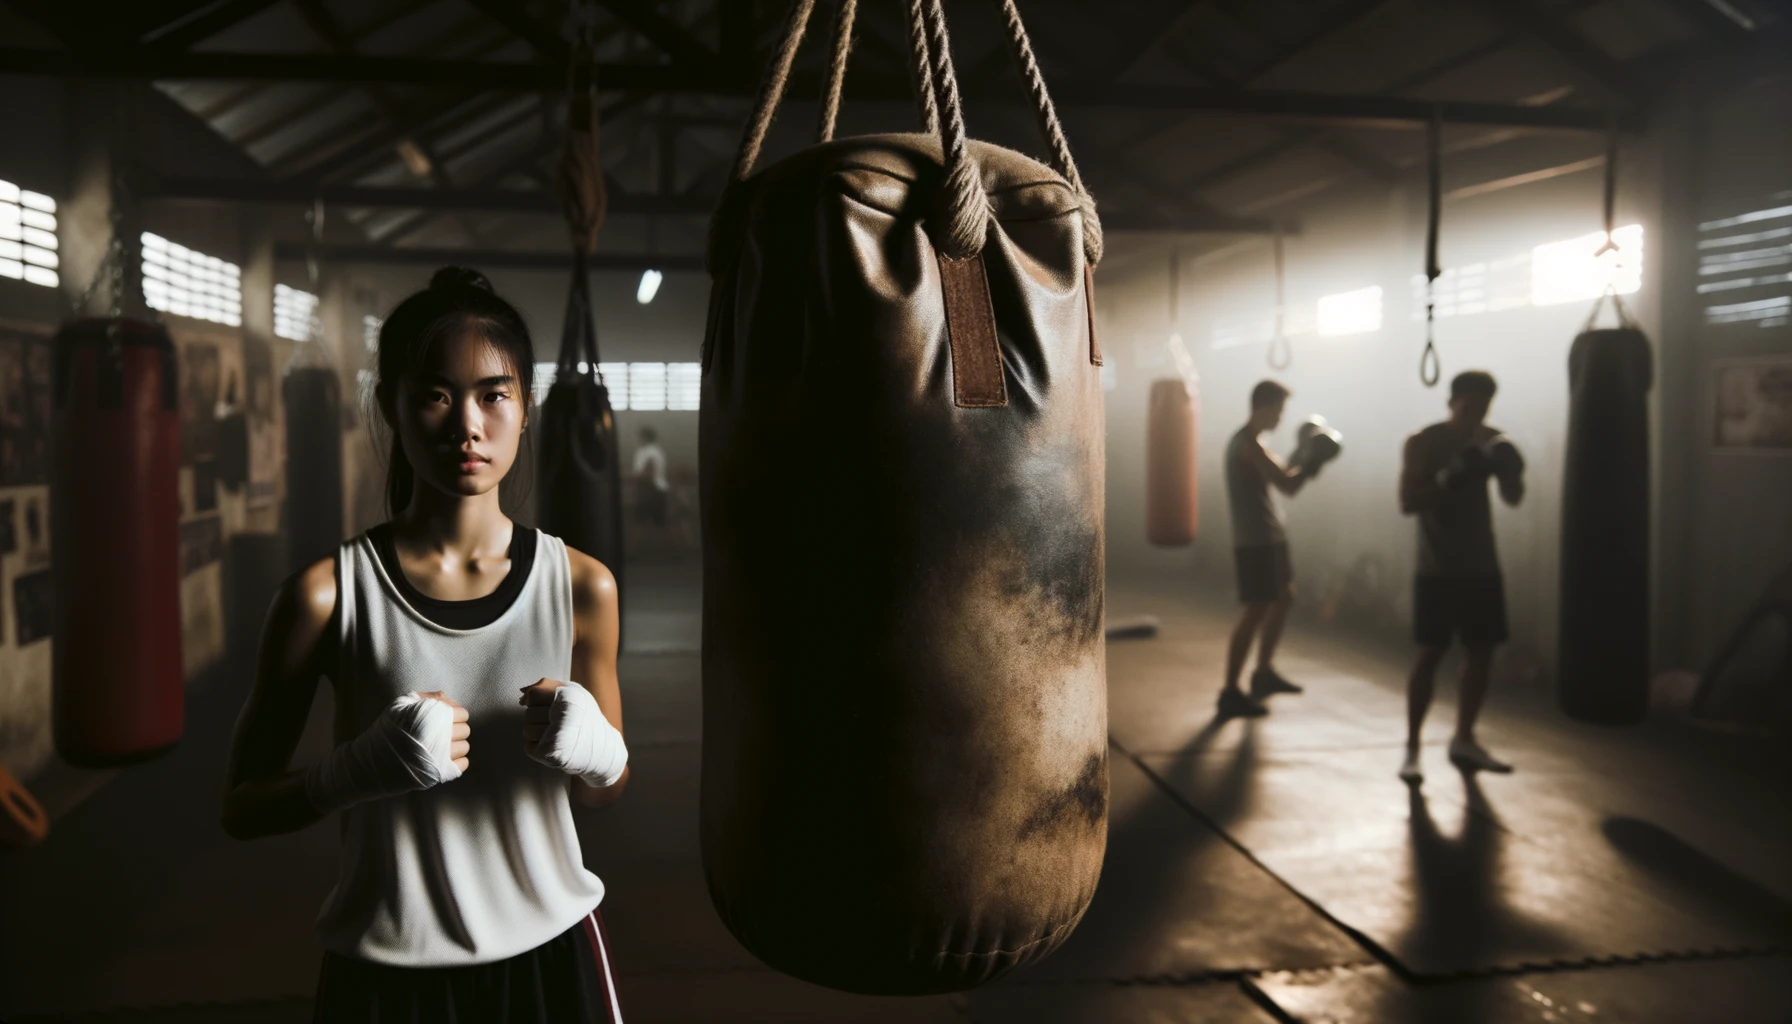 Der Fokus liegt auf einem abgenutzten Boxsack, der von der Decke hängt. Eine junge asiatische Boxerin mit umwickelten Händen steht daneben und sieht entschlossen und bereit zum Training aus.